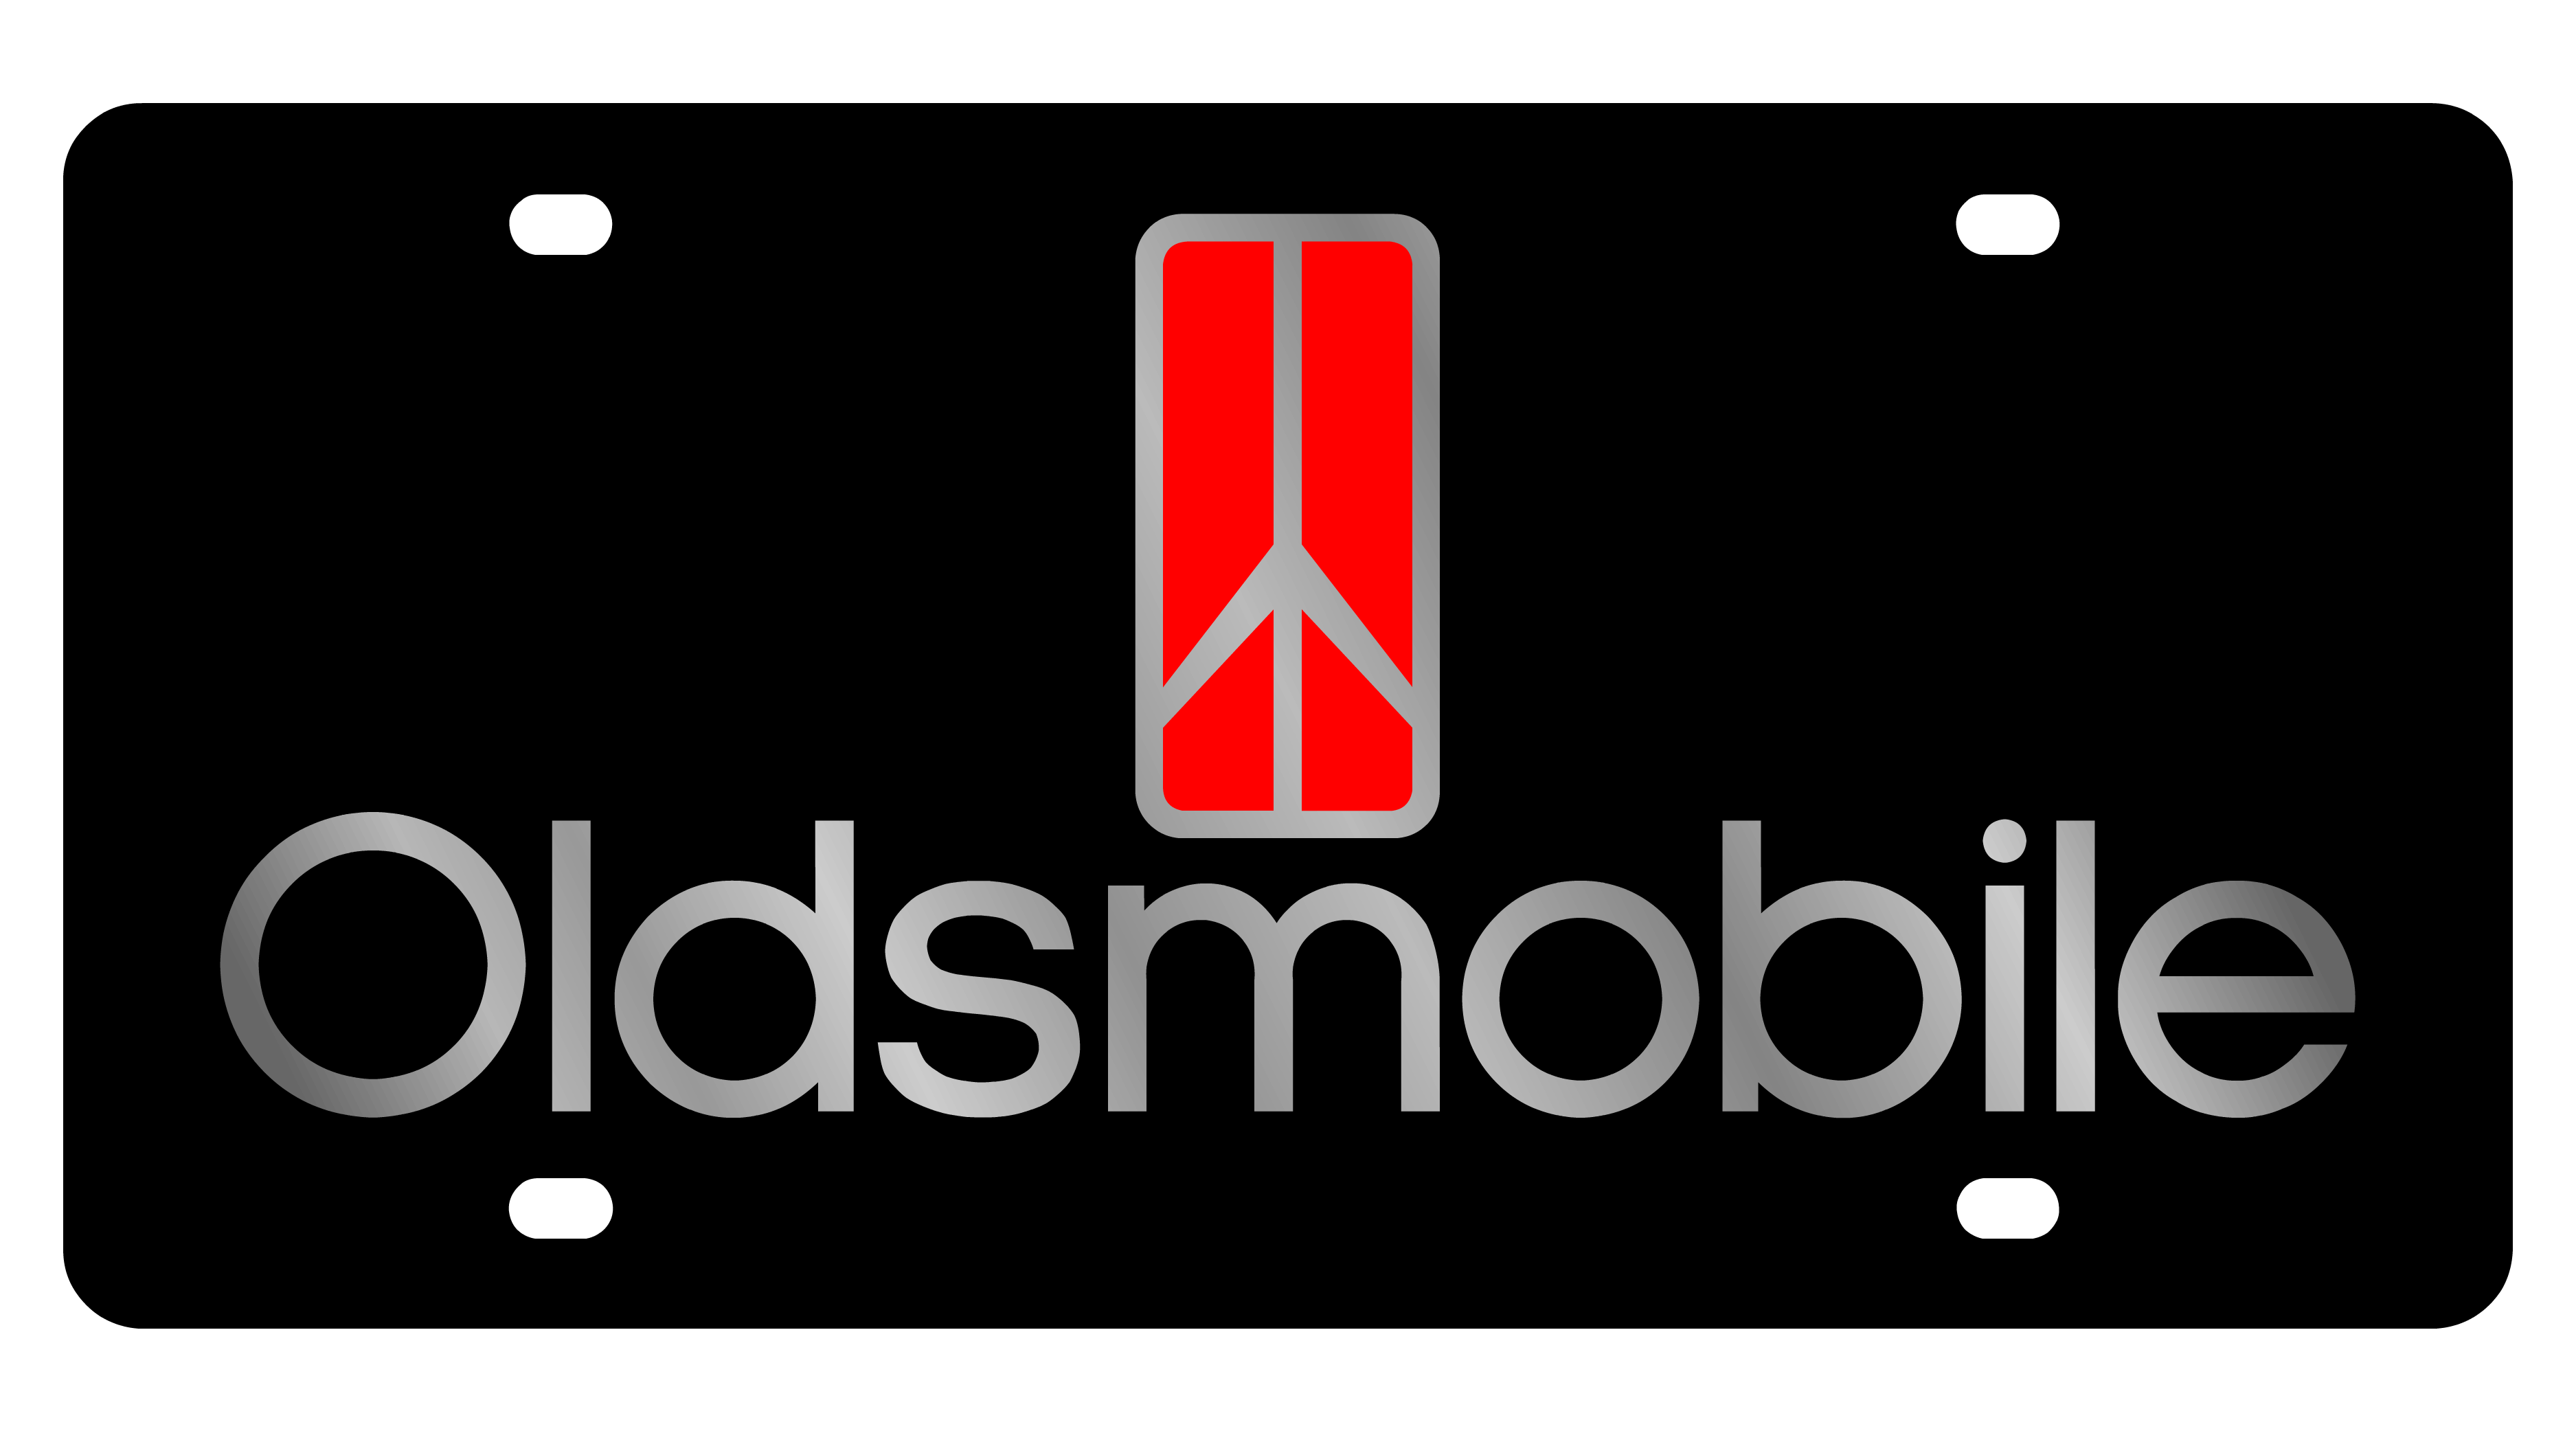 Oldsmobile Rocket Logo - Oldsmobile - Lazer-Tag - Oldsmobile Rocket - Logo/Word - Plates ...